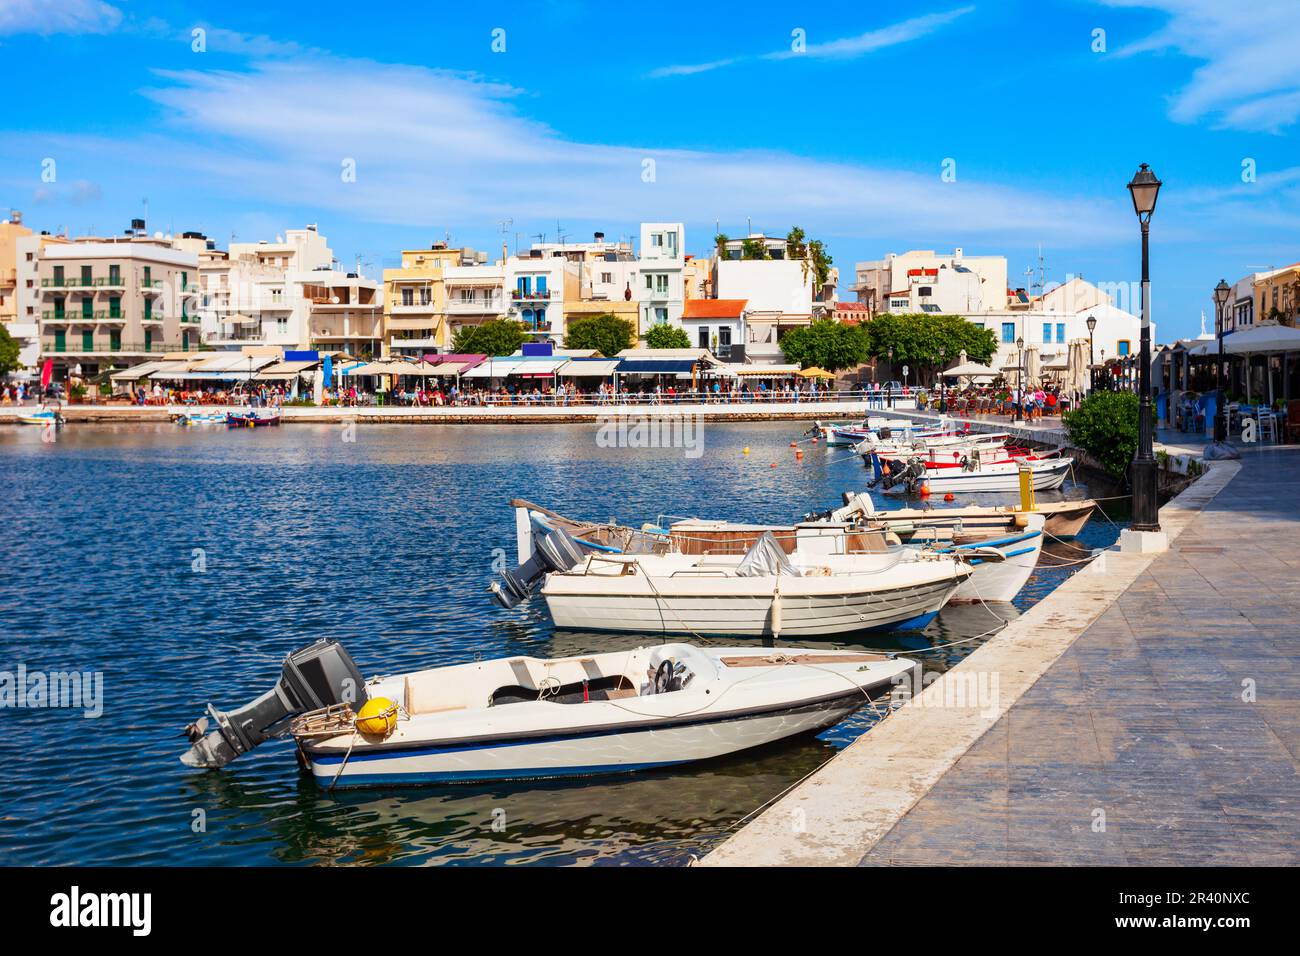 Vue panoramique sur le port d'Agios Nikolaos. Agios, Hagios ou Aghios Nikolaos est une ville côtière sur l'île de Crète en Grèce. Banque D'Images